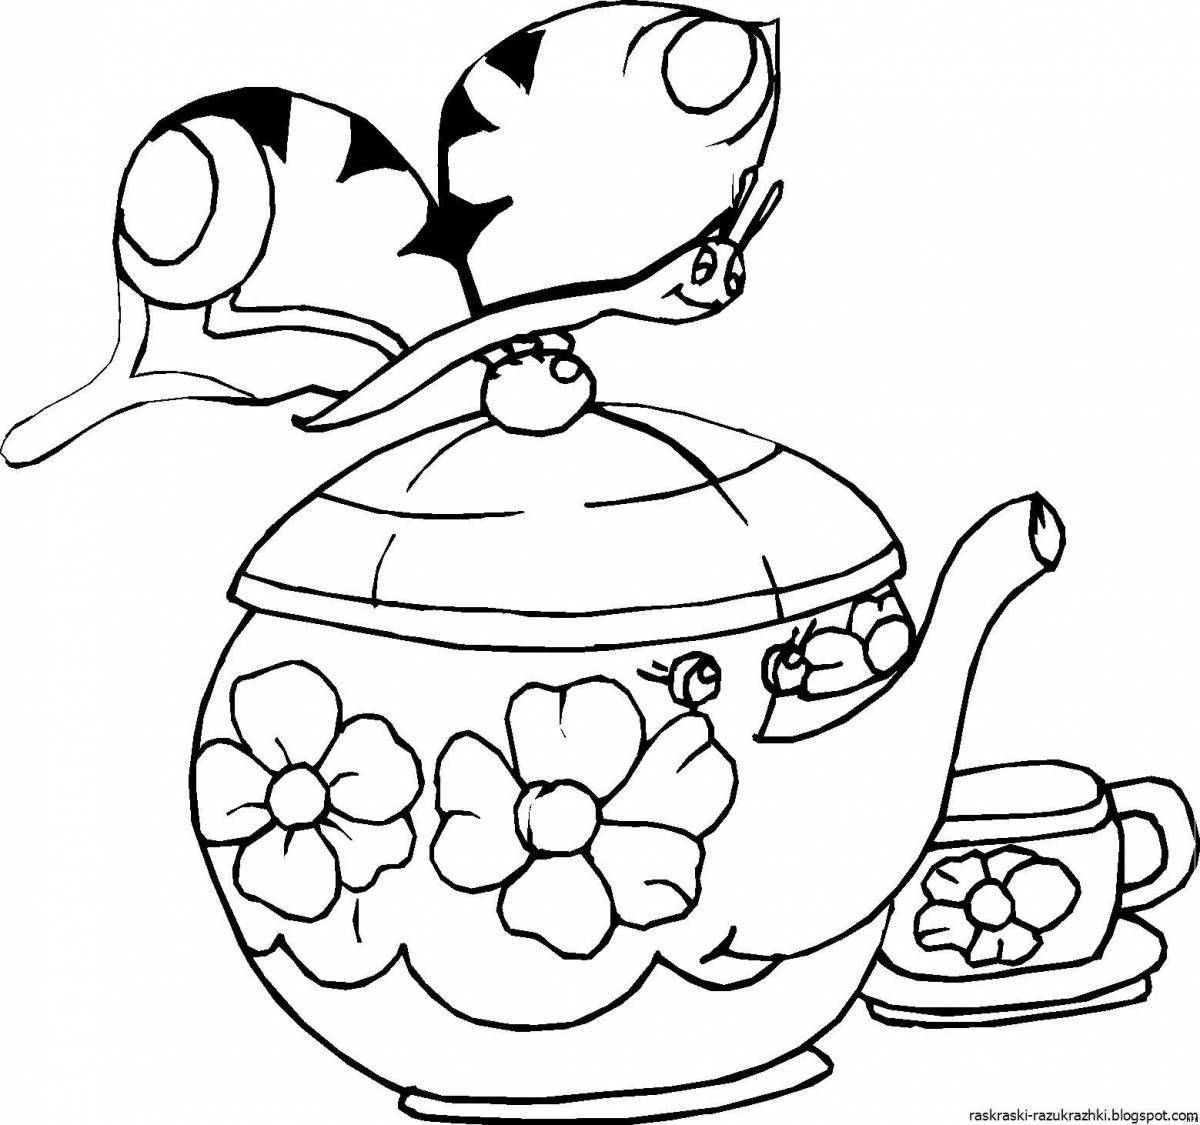 Раскраска очаровательный чайник для малышей 3-4 лет